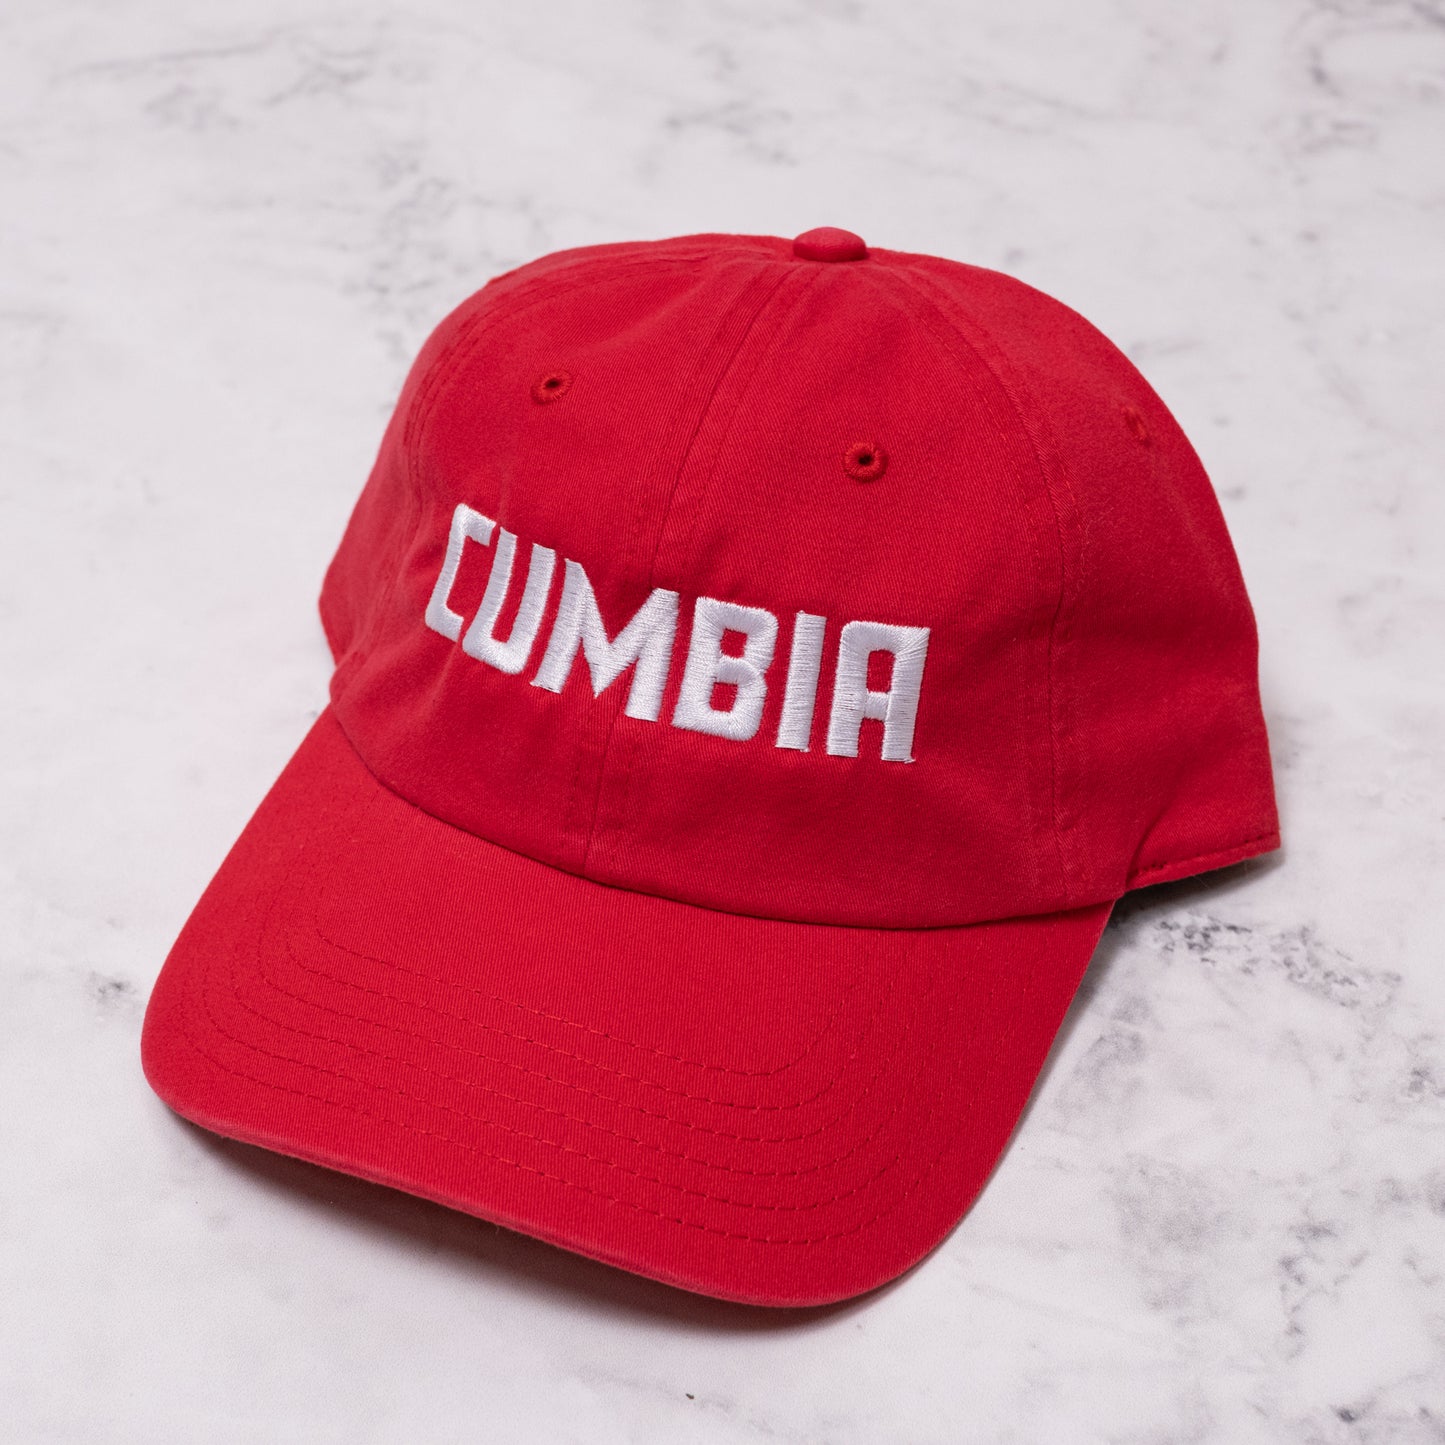 Cumbia dad hat